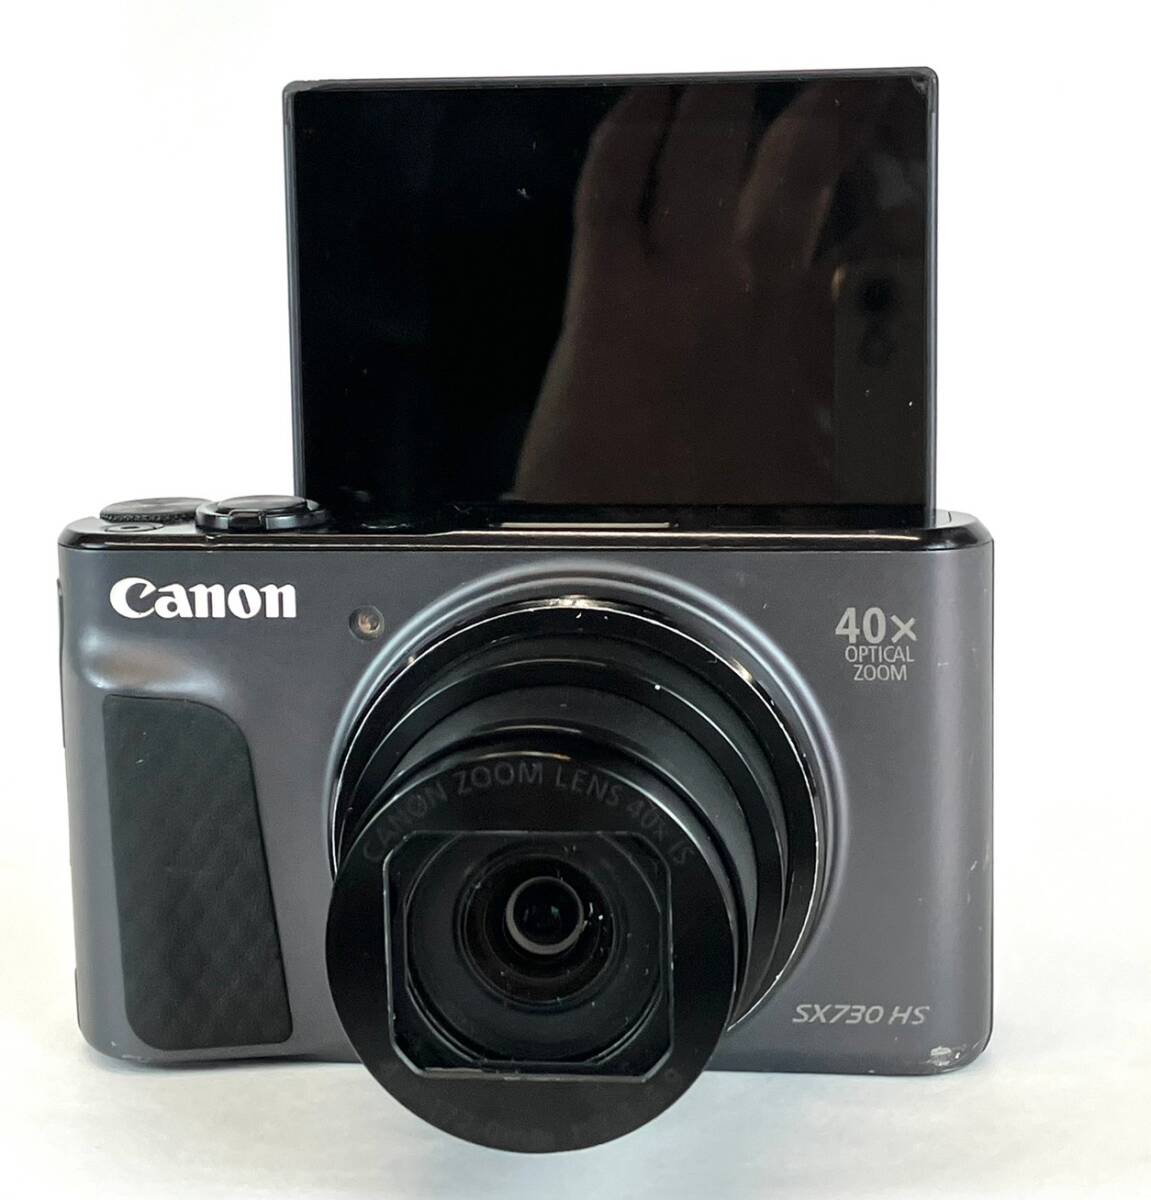 Canon コンパクトデジタルカメラ PowerShot SX730 HS ブラック 光学40倍ズーム PSSX730HS(BK)_画像3